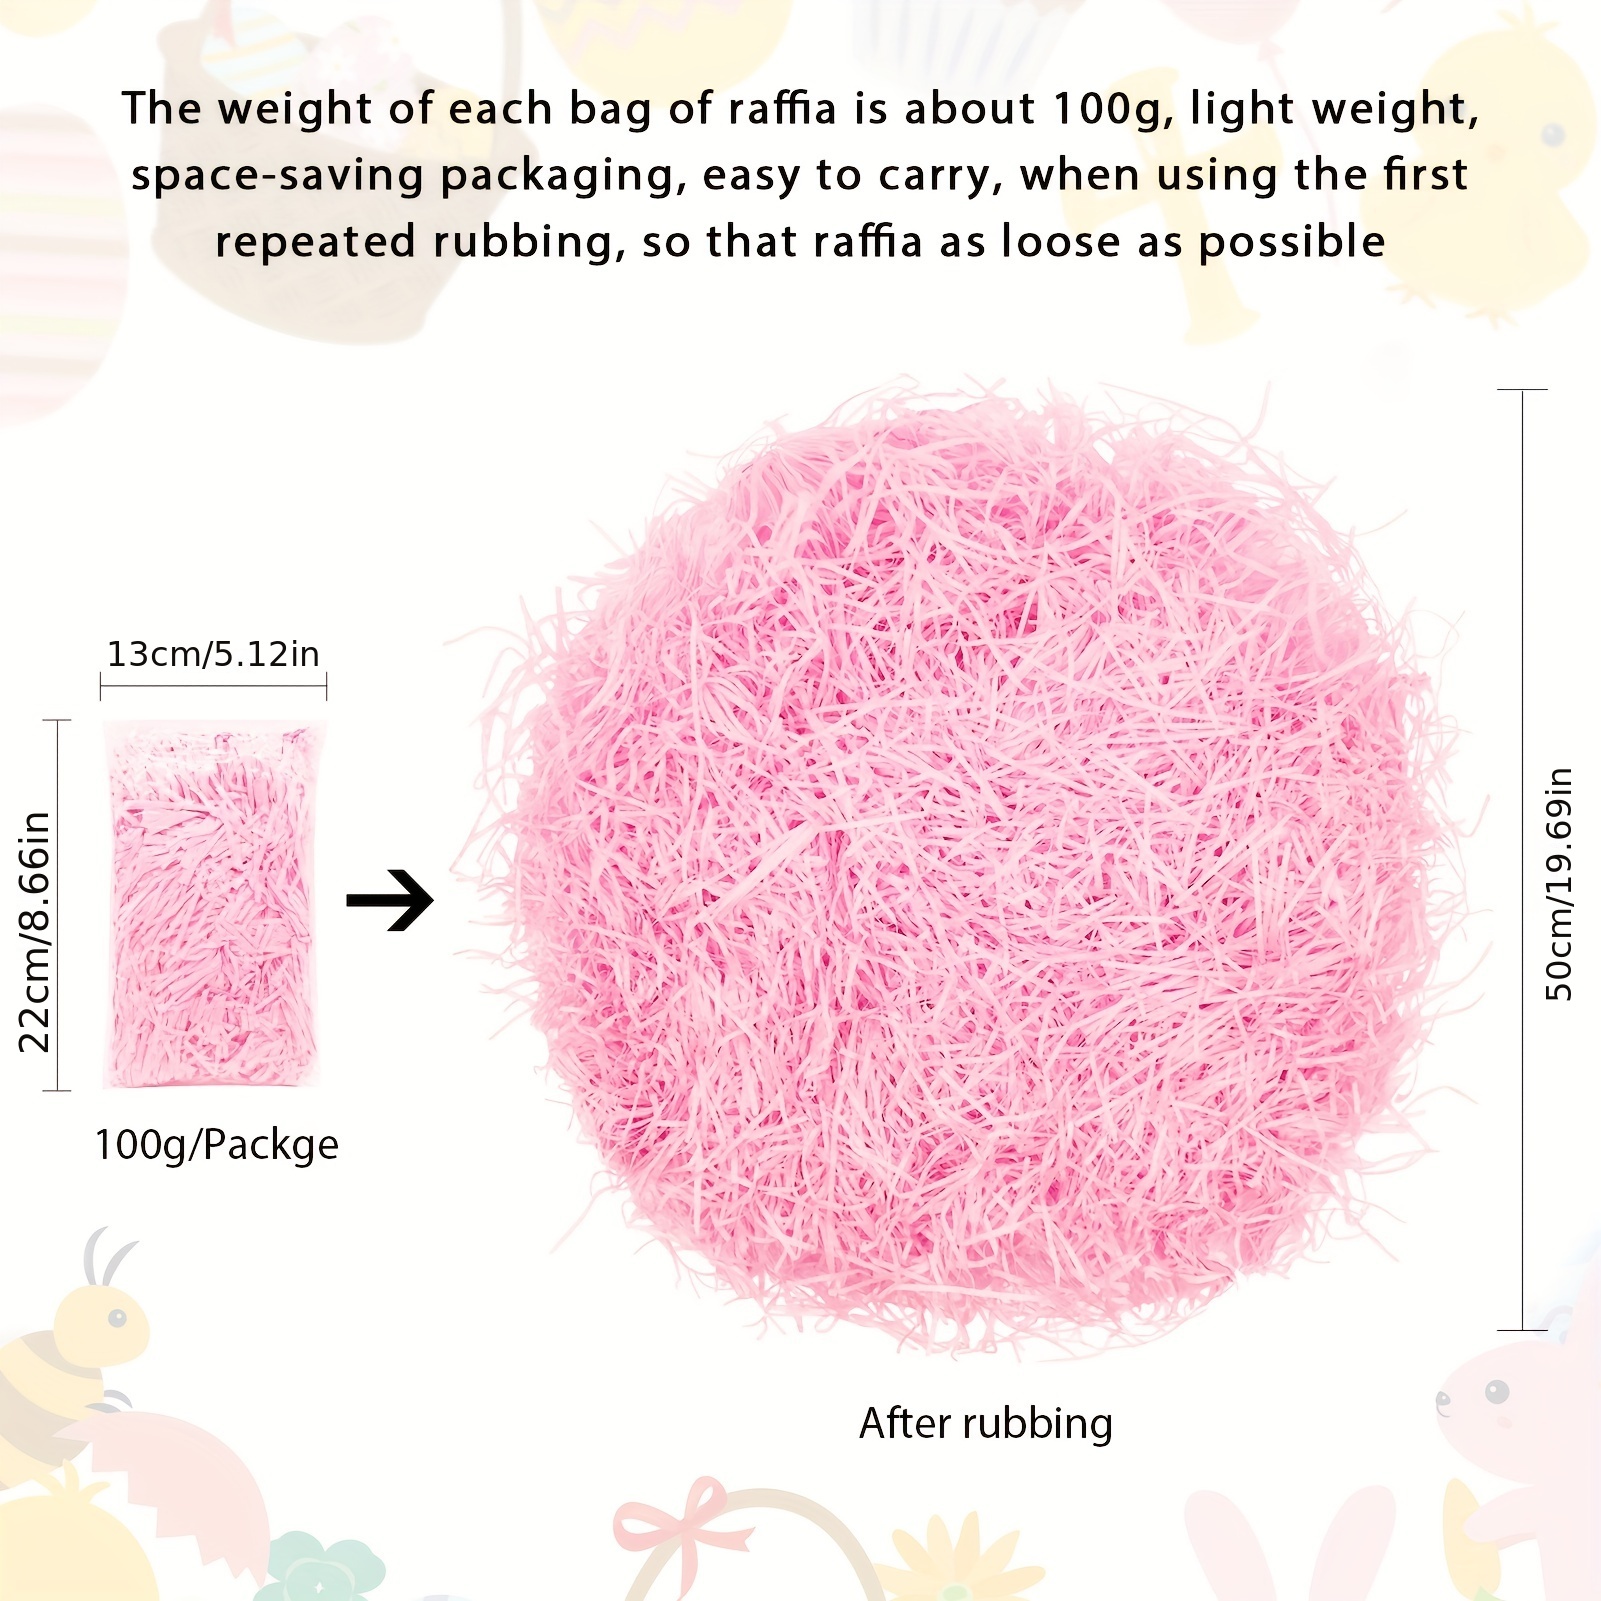 Hot Pink Color Tissue Paper Shred, 18 oz. Bag